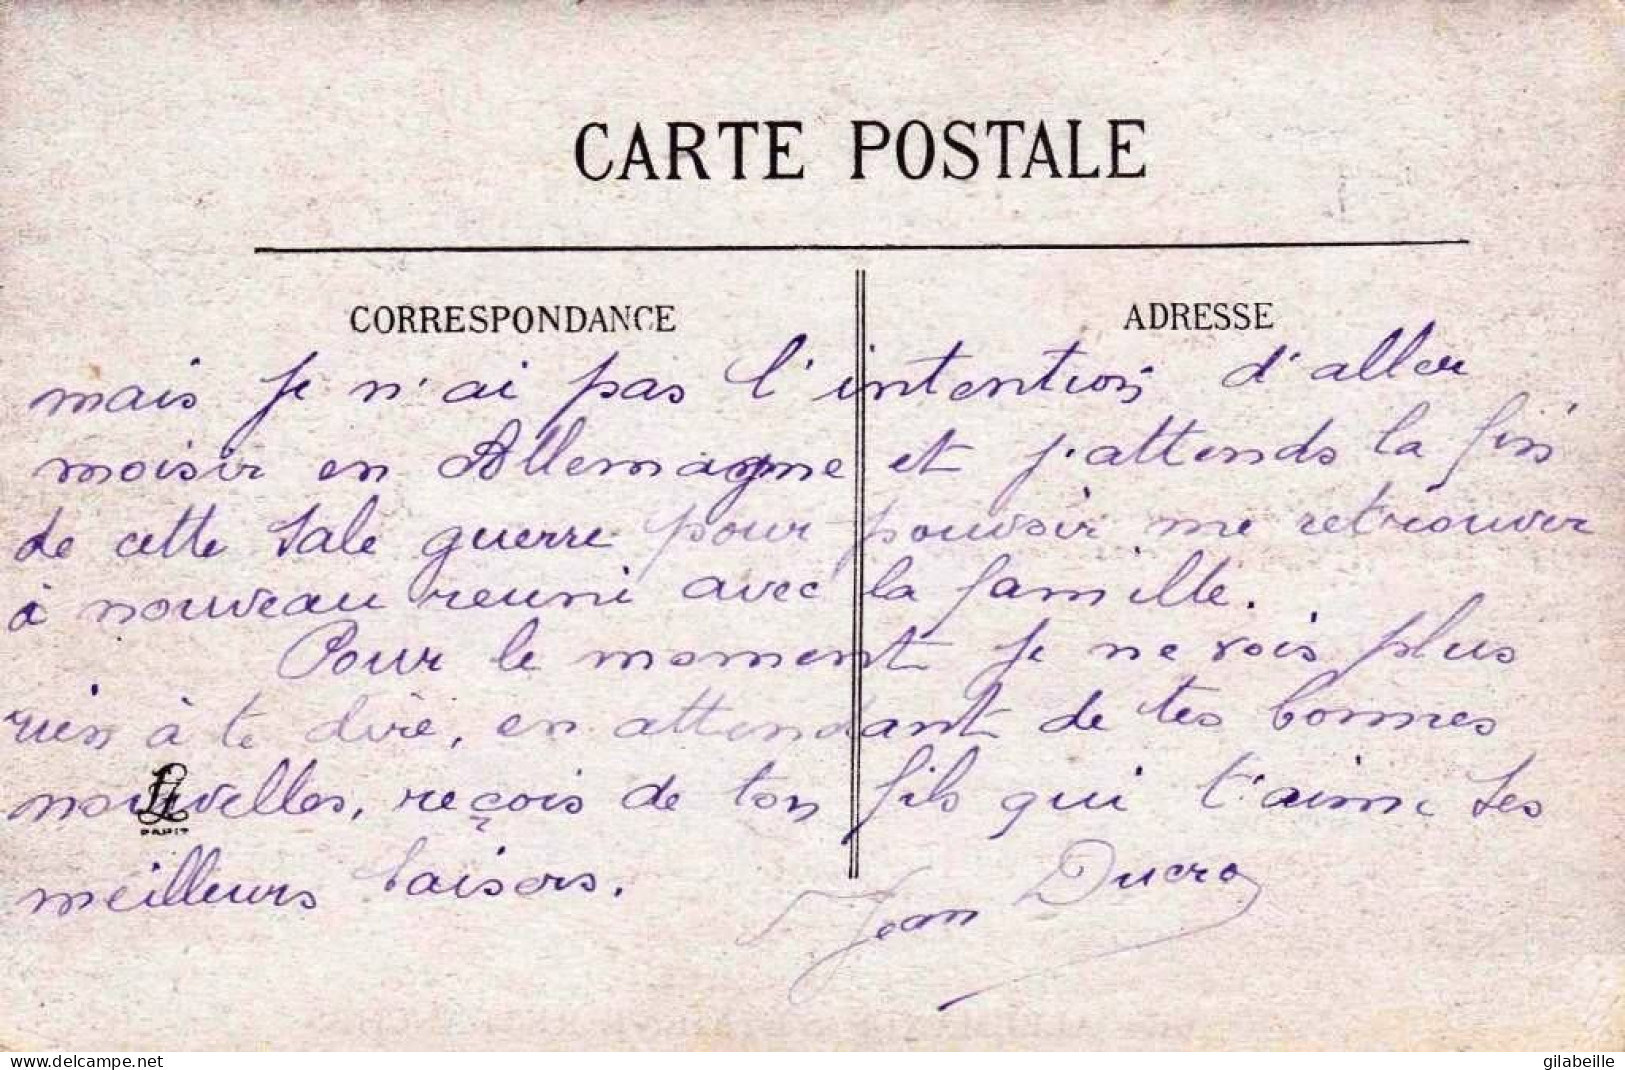 02 - Aisne -  SOISSONS - Les Fameuses Carrieres Ou Les Allemands S Etaient Retranchés - Soissons